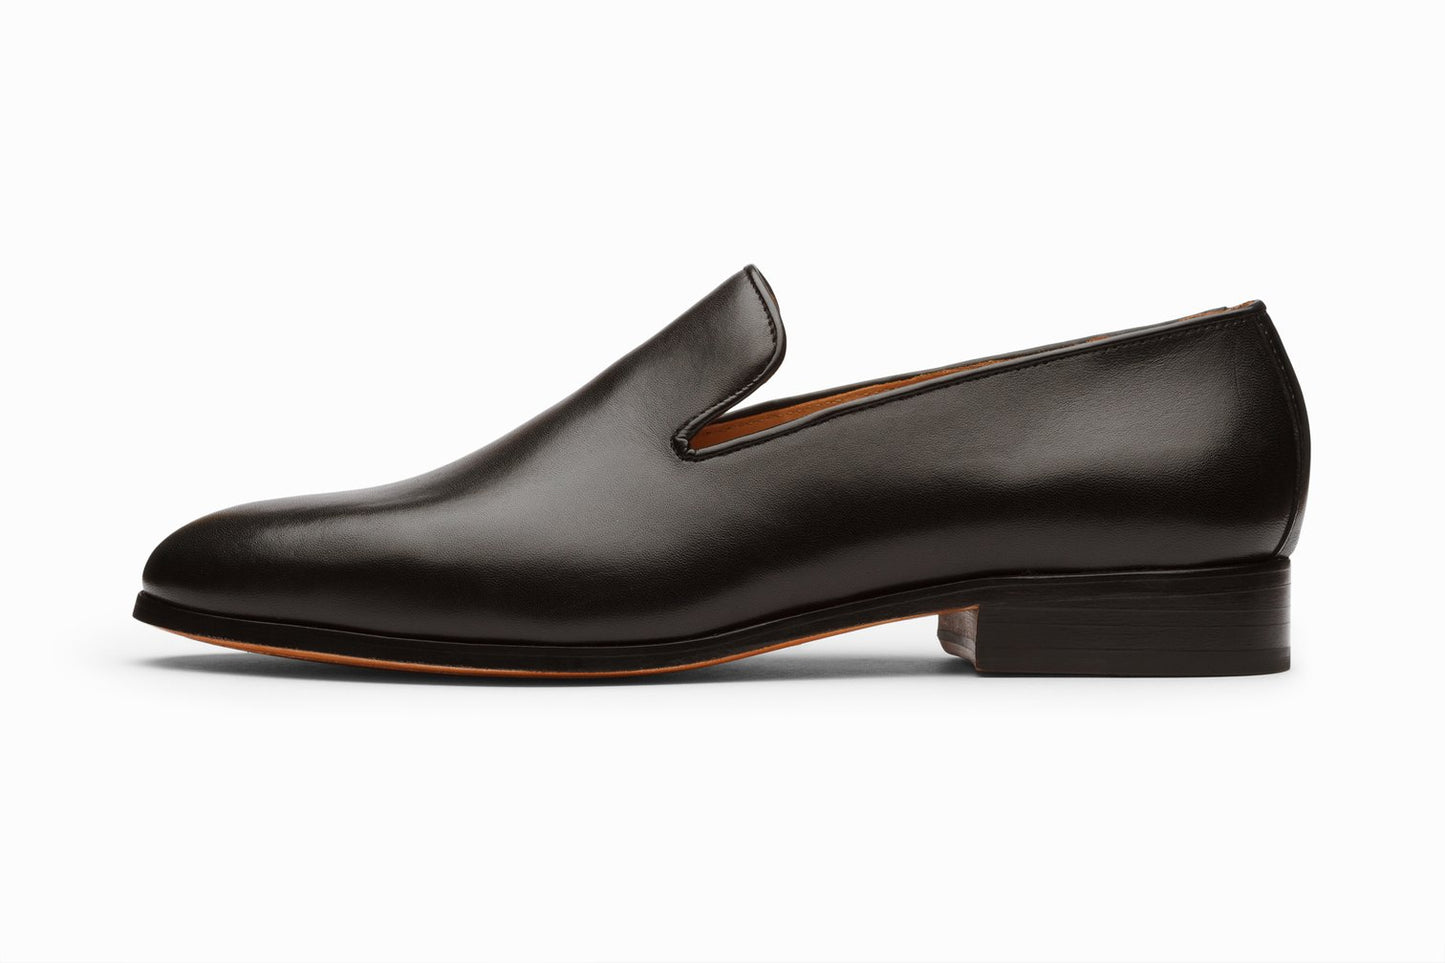 Venetian loafer black, formal shoes for men in Dubai.